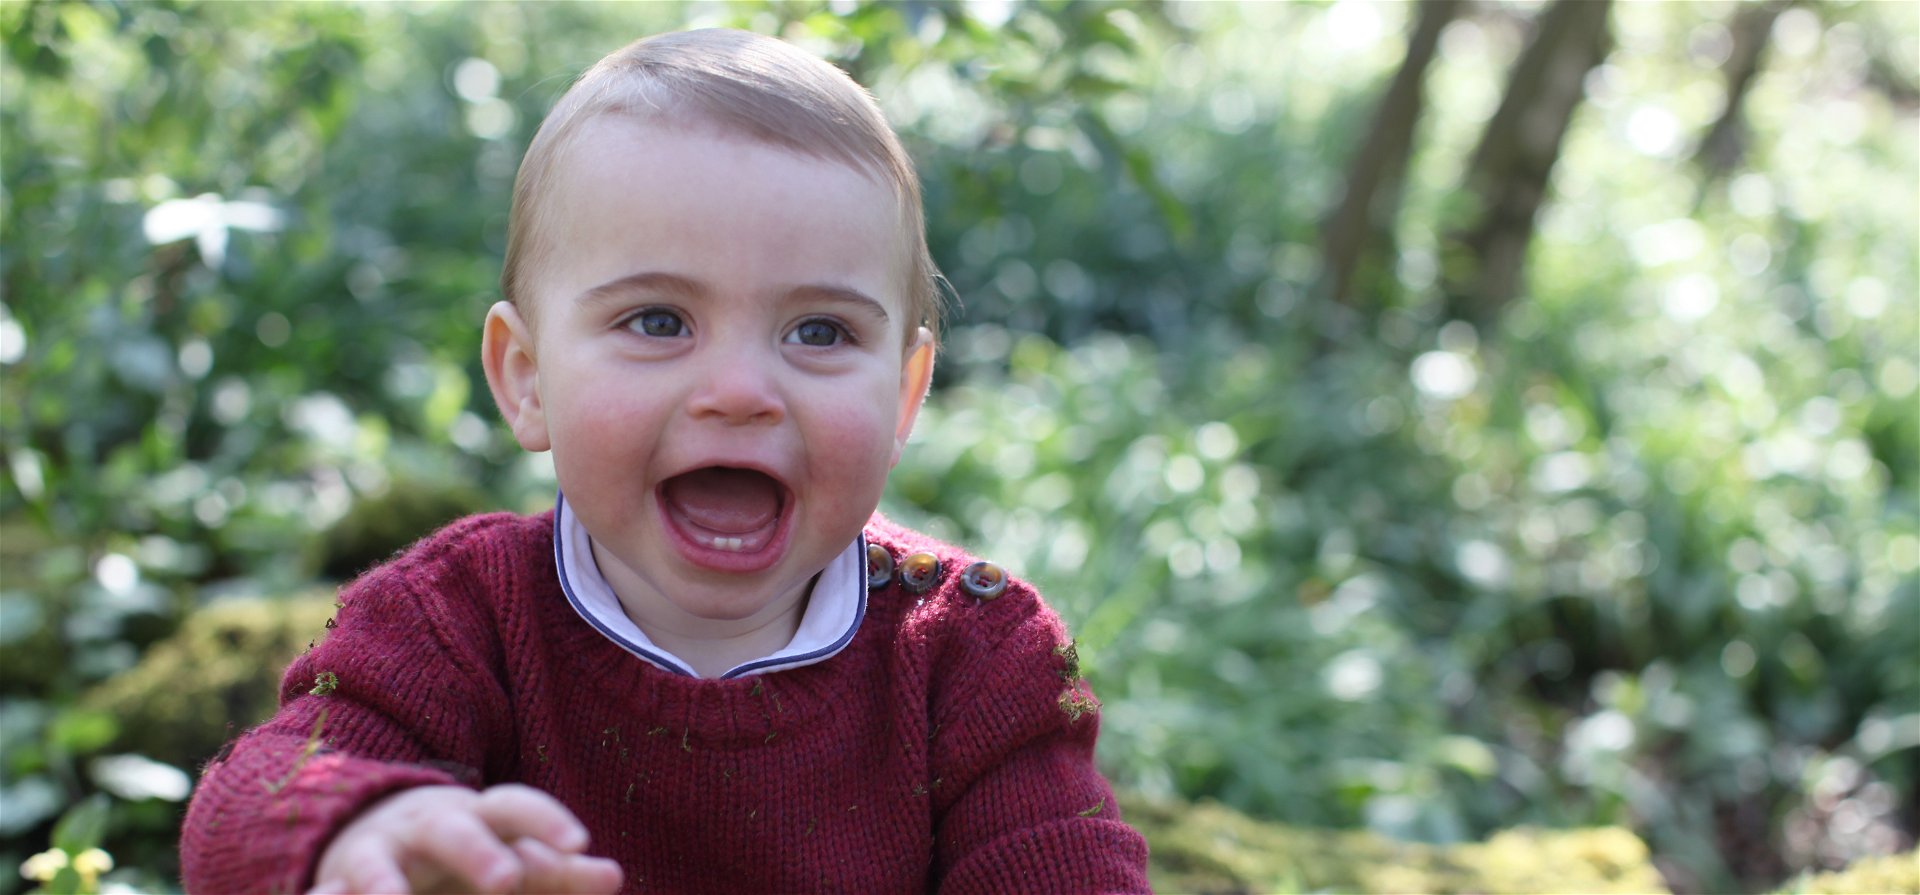 Aranyos születésnapi fotók készültek az egyéves Lajos hercegről